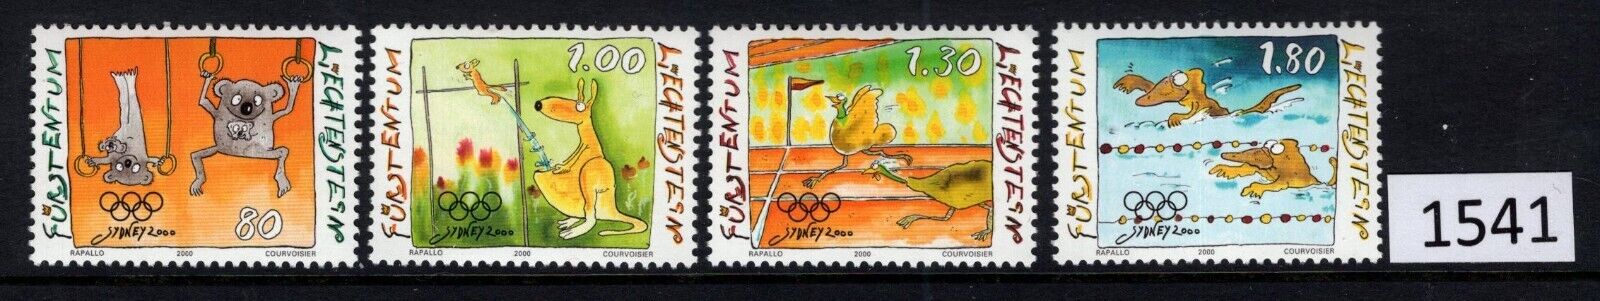 $1 World MNH Stamps (1541), Liechtenstein Scott 1185-1188, Olympics set of 4